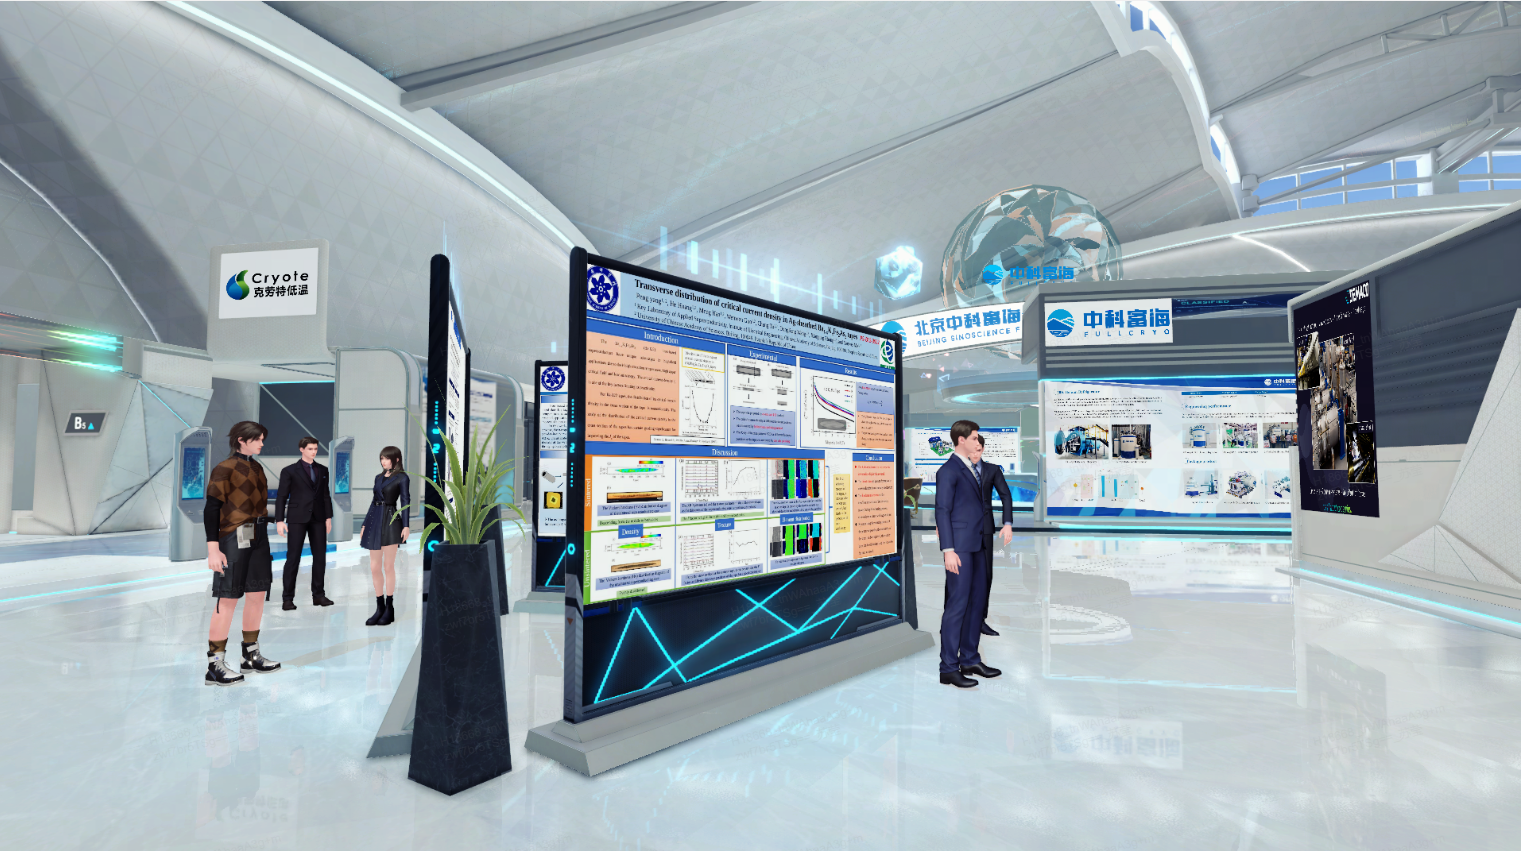 图片展示了一个现代化的展览会场，人们在观看展板，场内设计科技感强，有未来主义风格，色调以蓝白为主。